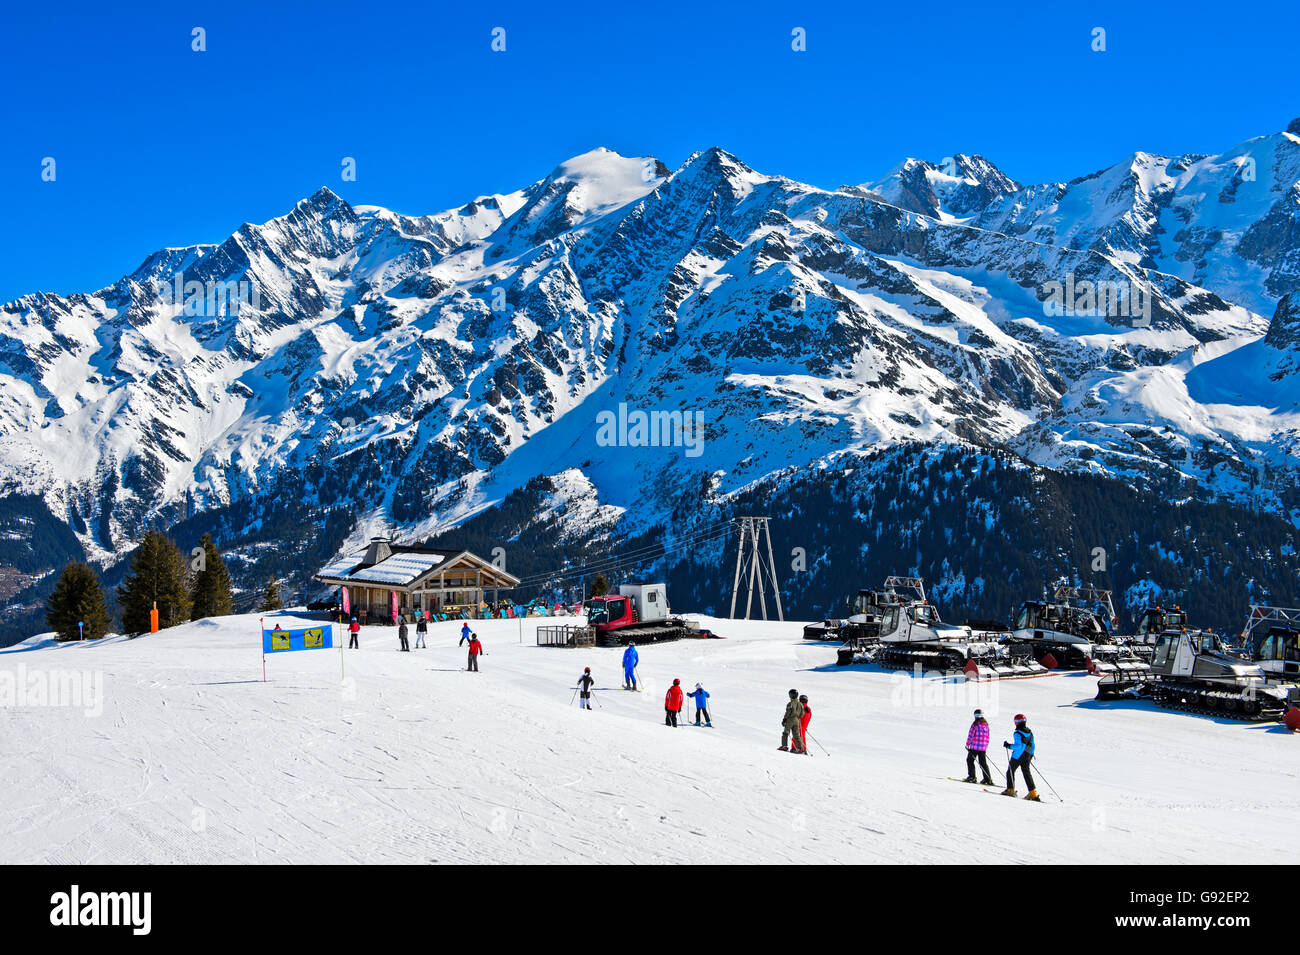 Nell'area skkiing Les Contamines-Montjoie contro il massiccio del Monte Bianco, Alta Savoia, Francia Foto Stock